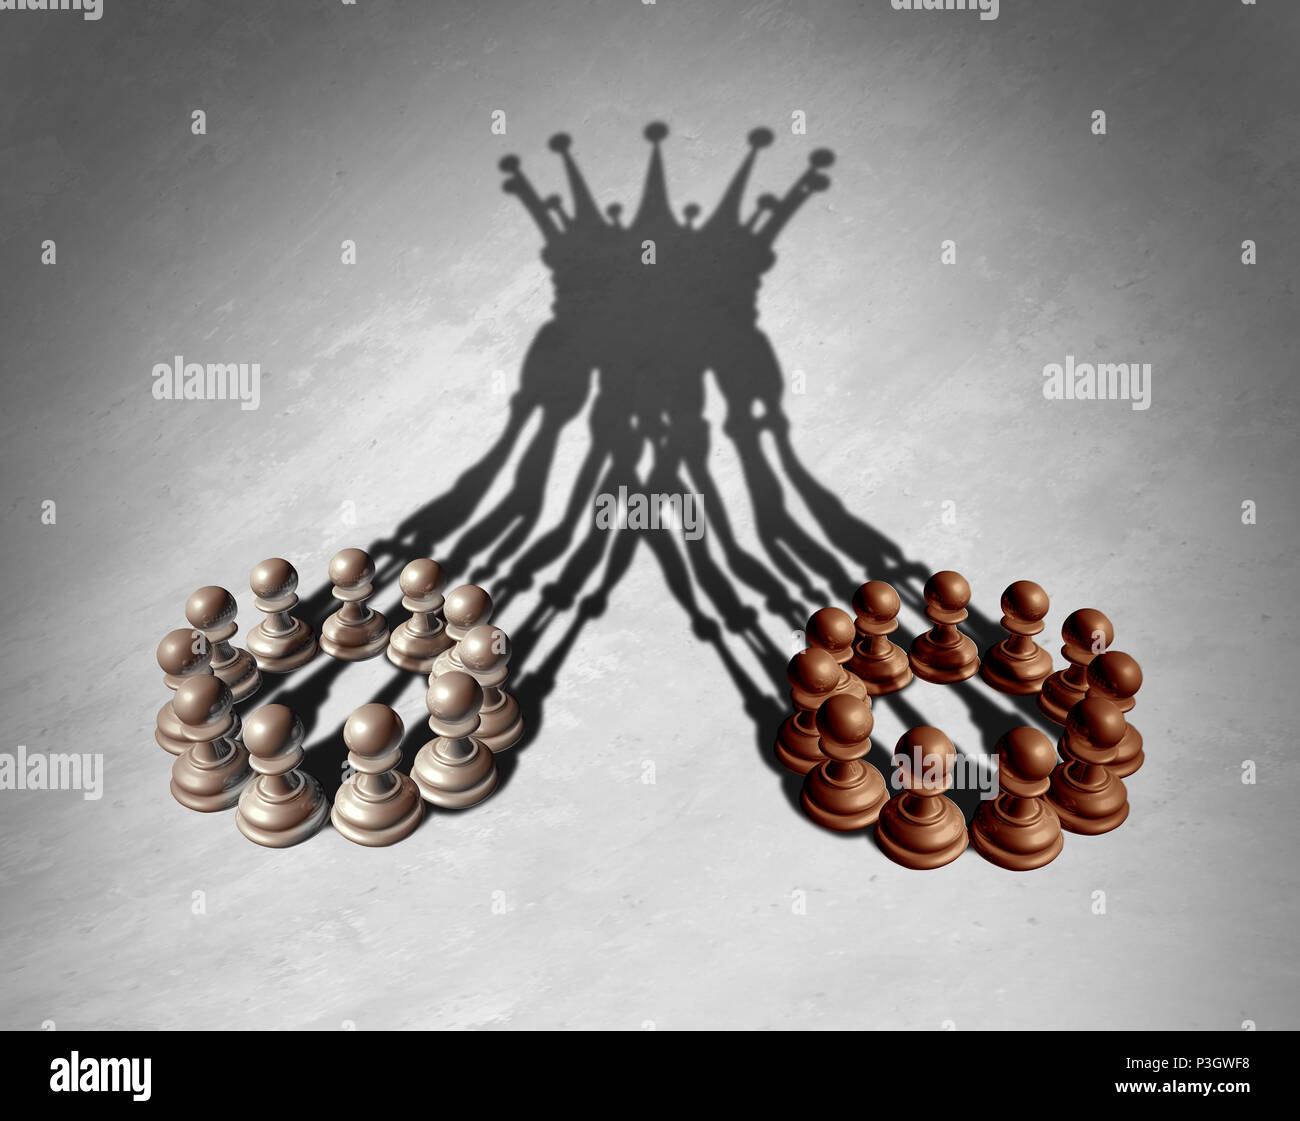 Groupe d'entreprise concept de leadership qu'une fusion et d'acquisition et d'équipe de l'entreprise combinant des points forts comme des pions d'échecs formant une couronne roi exprimés. Banque D'Images